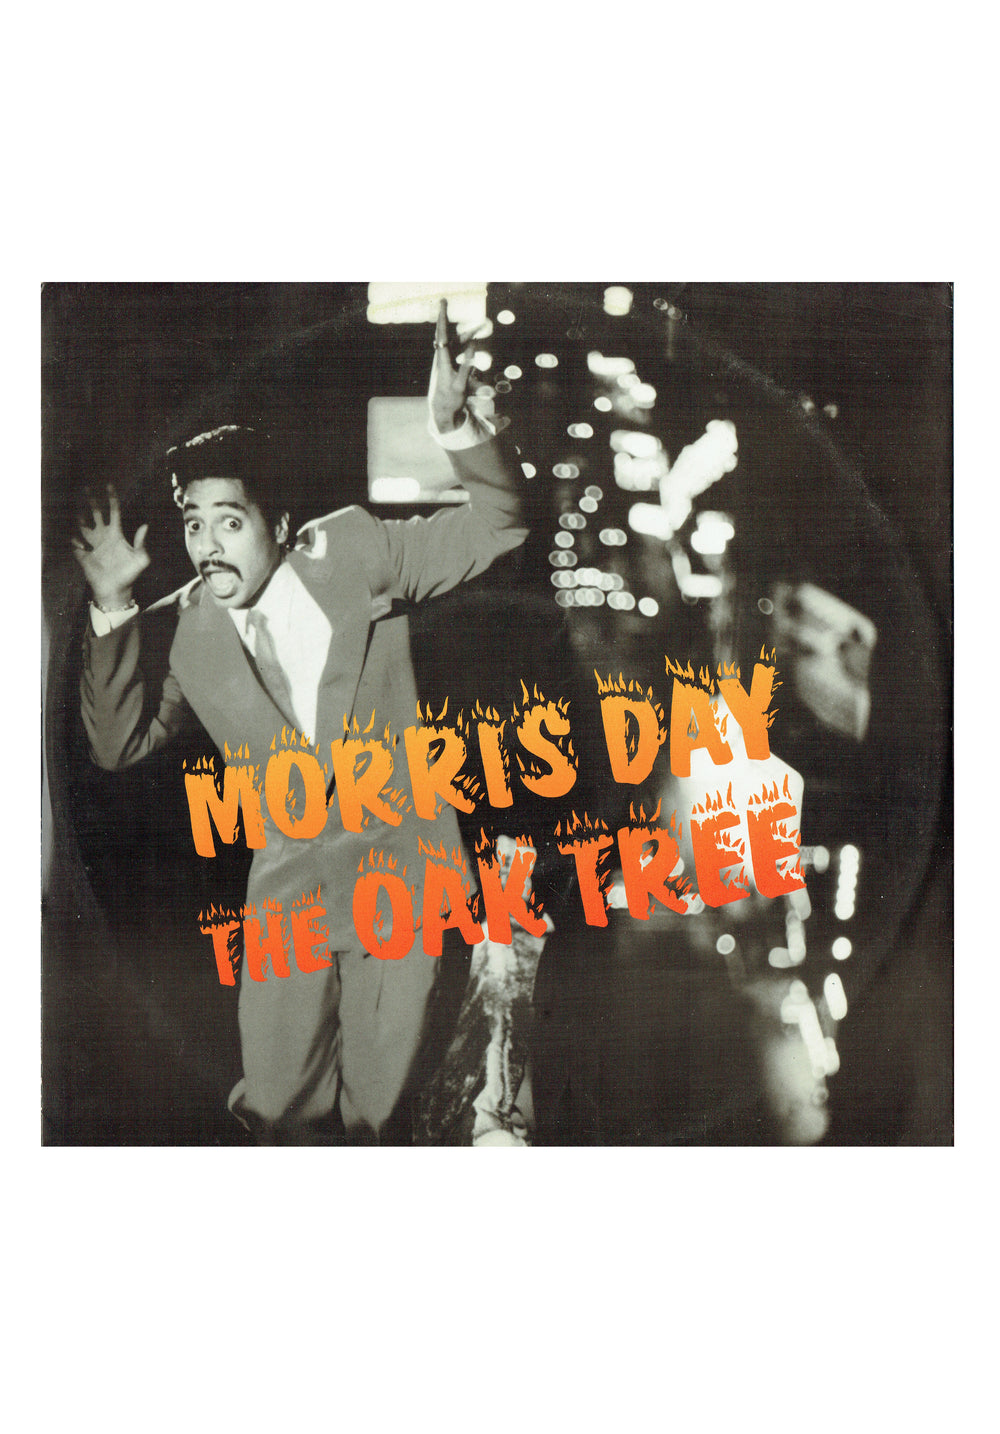 Prince – Morris Day The Oak Tree Vinyl 12" UK Preloved: 1985